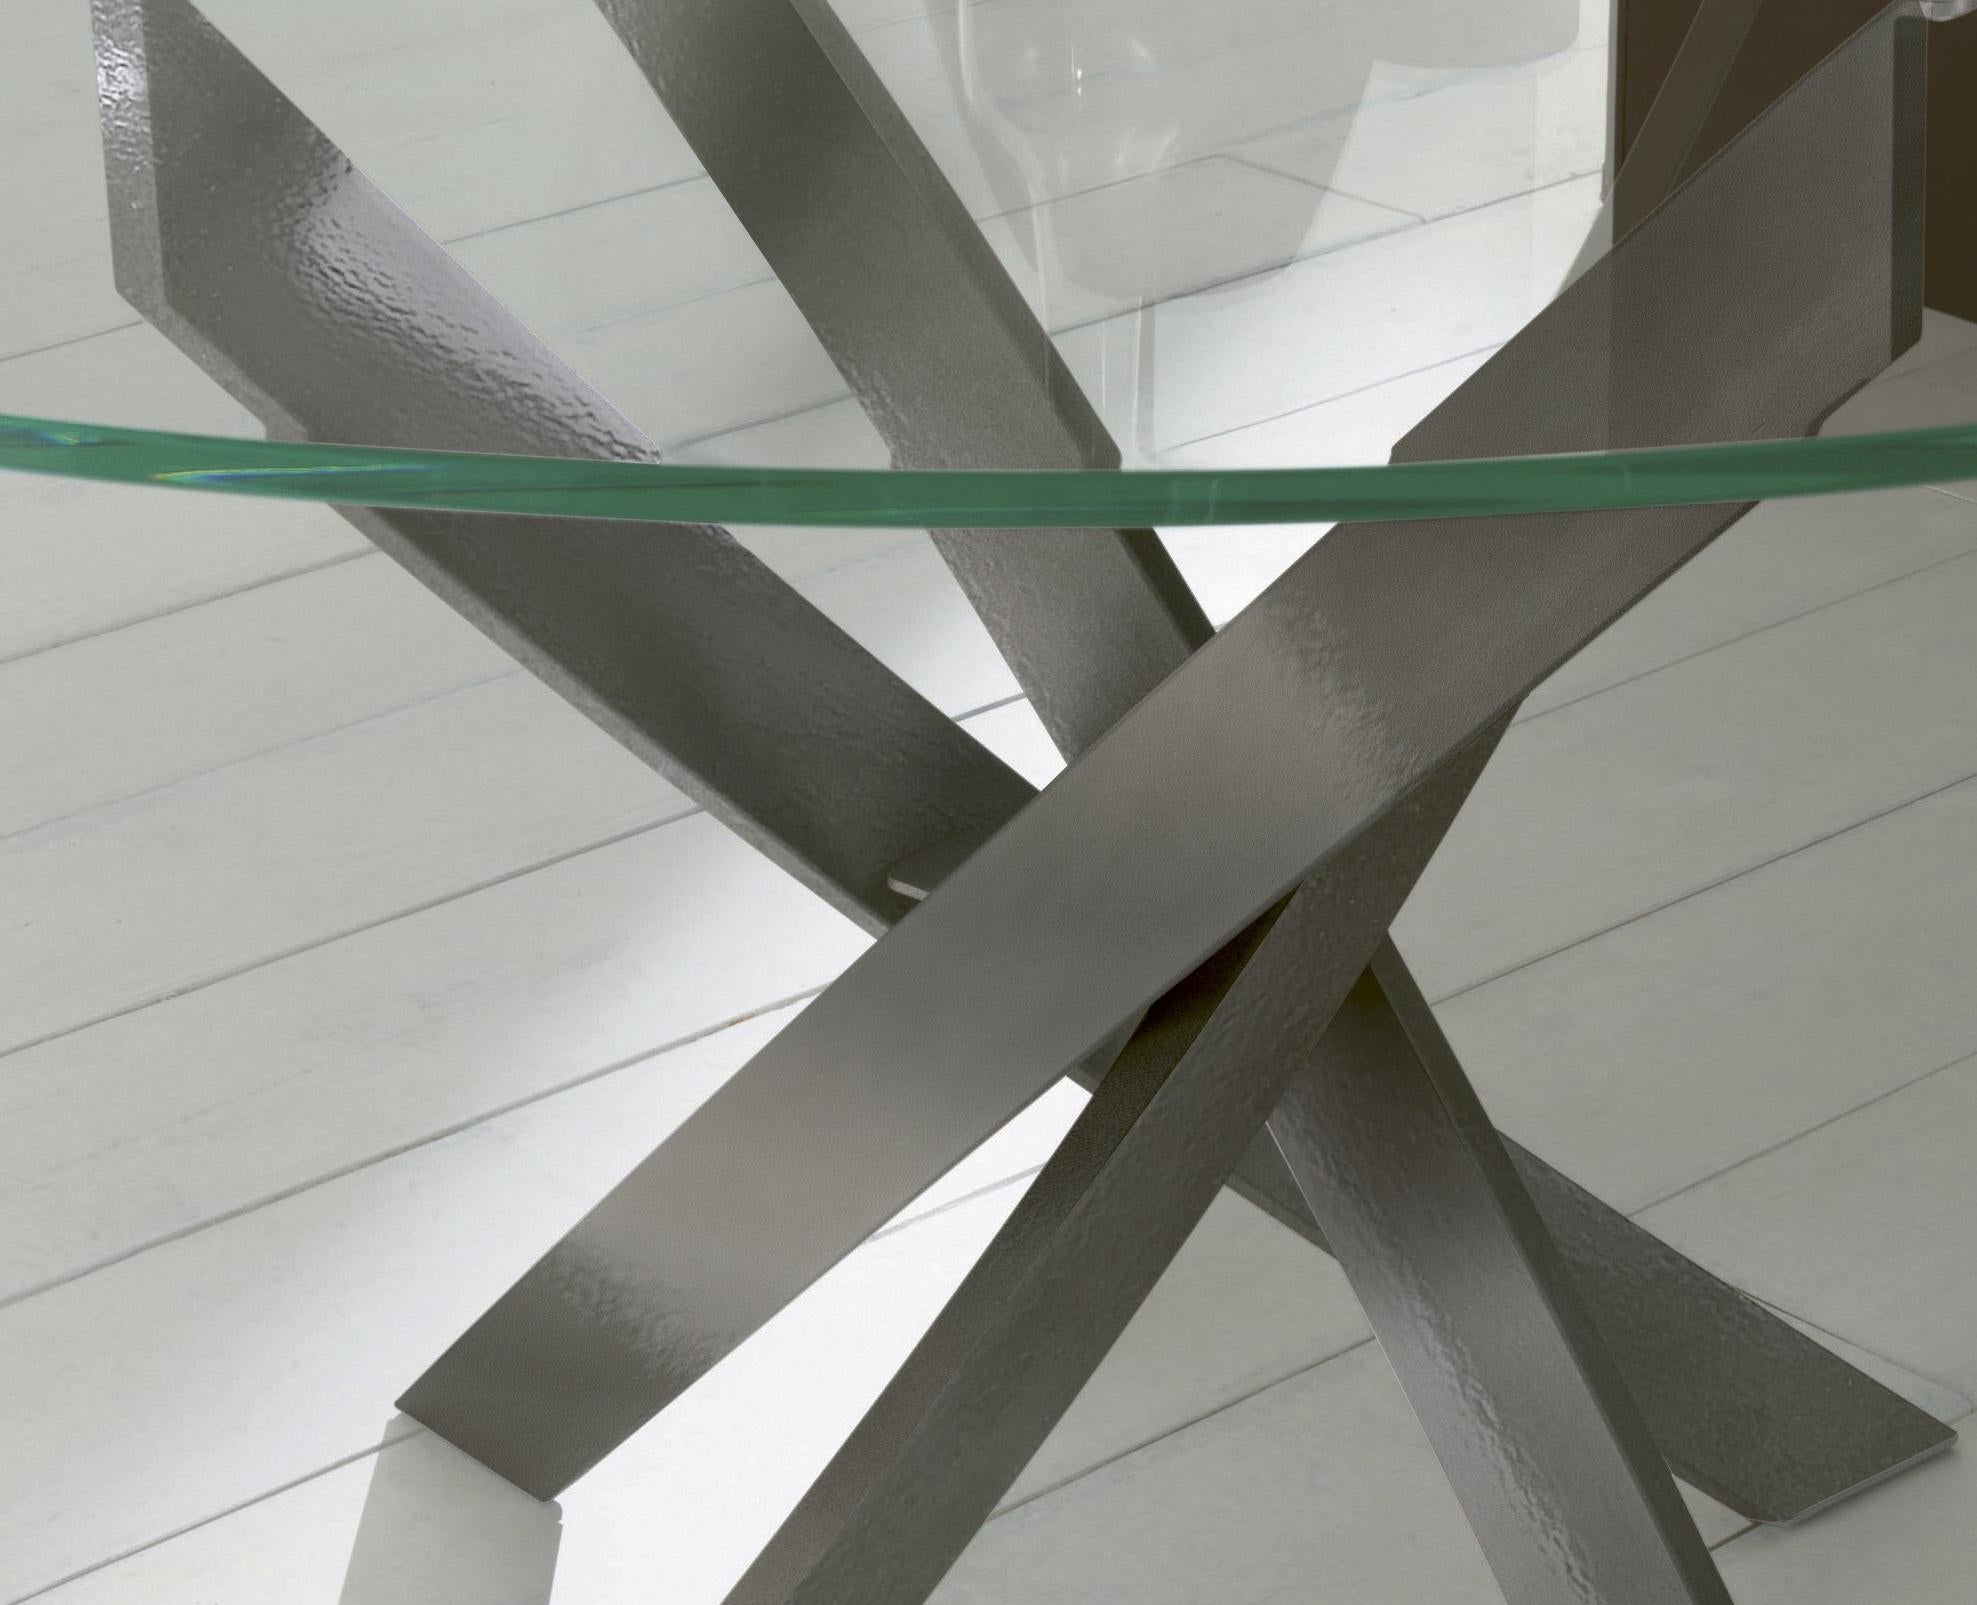 Conçue par Pocci&Dondoli, cette table se caractérise par une torsion harmonieuse d'arcs sinueux, qui dessine sa base unique. Le sommet rond est composé de verre extra-clair transparent, c'est-à-dire de verre trempé sur base extra-light, traité